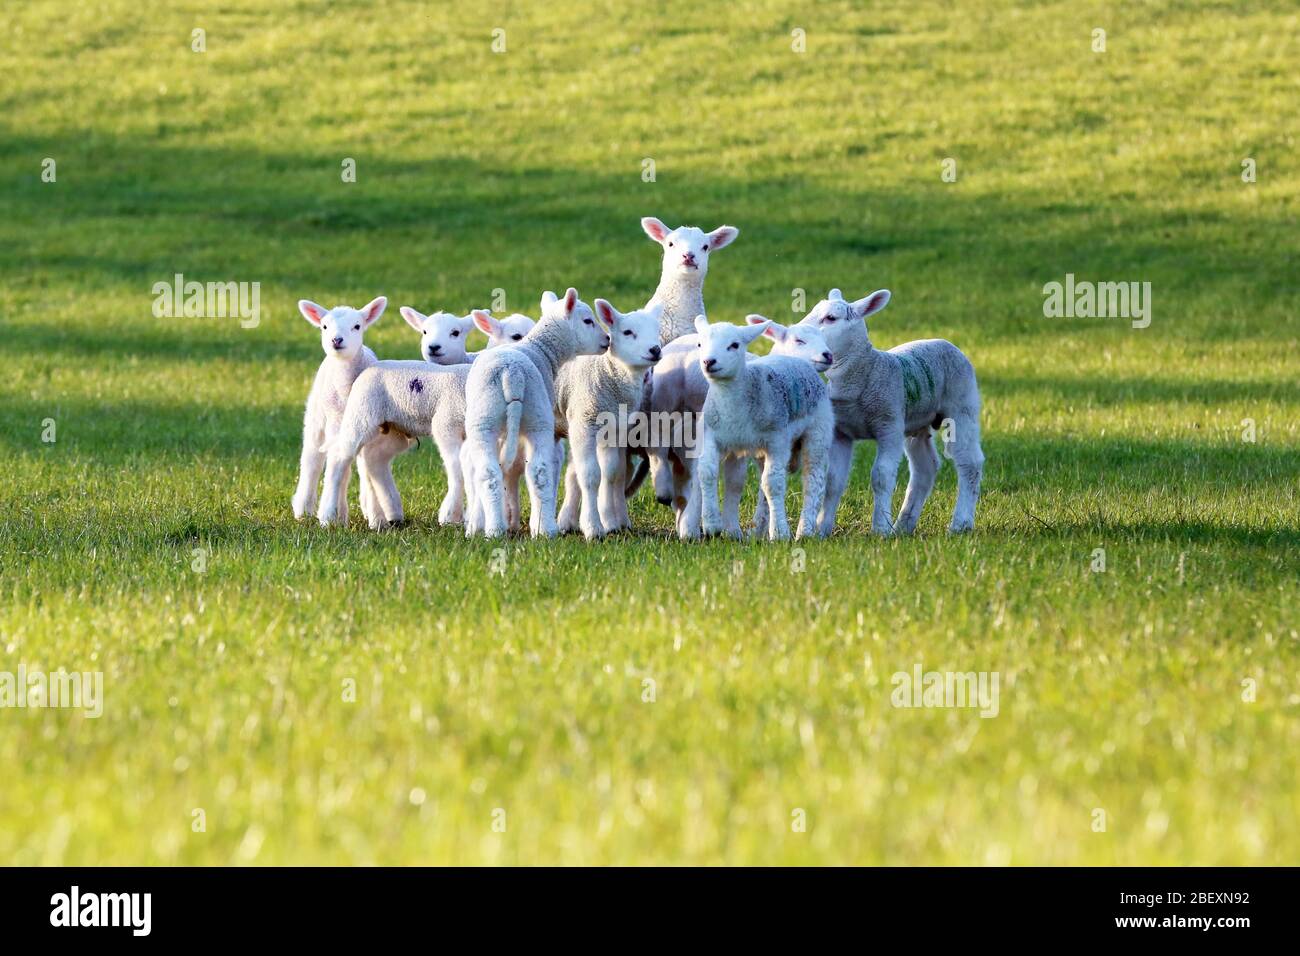 Des agneaux mérillés jouent et jouent ensemble dans un pré Cotswold - début printemps 2020 Banque D'Images